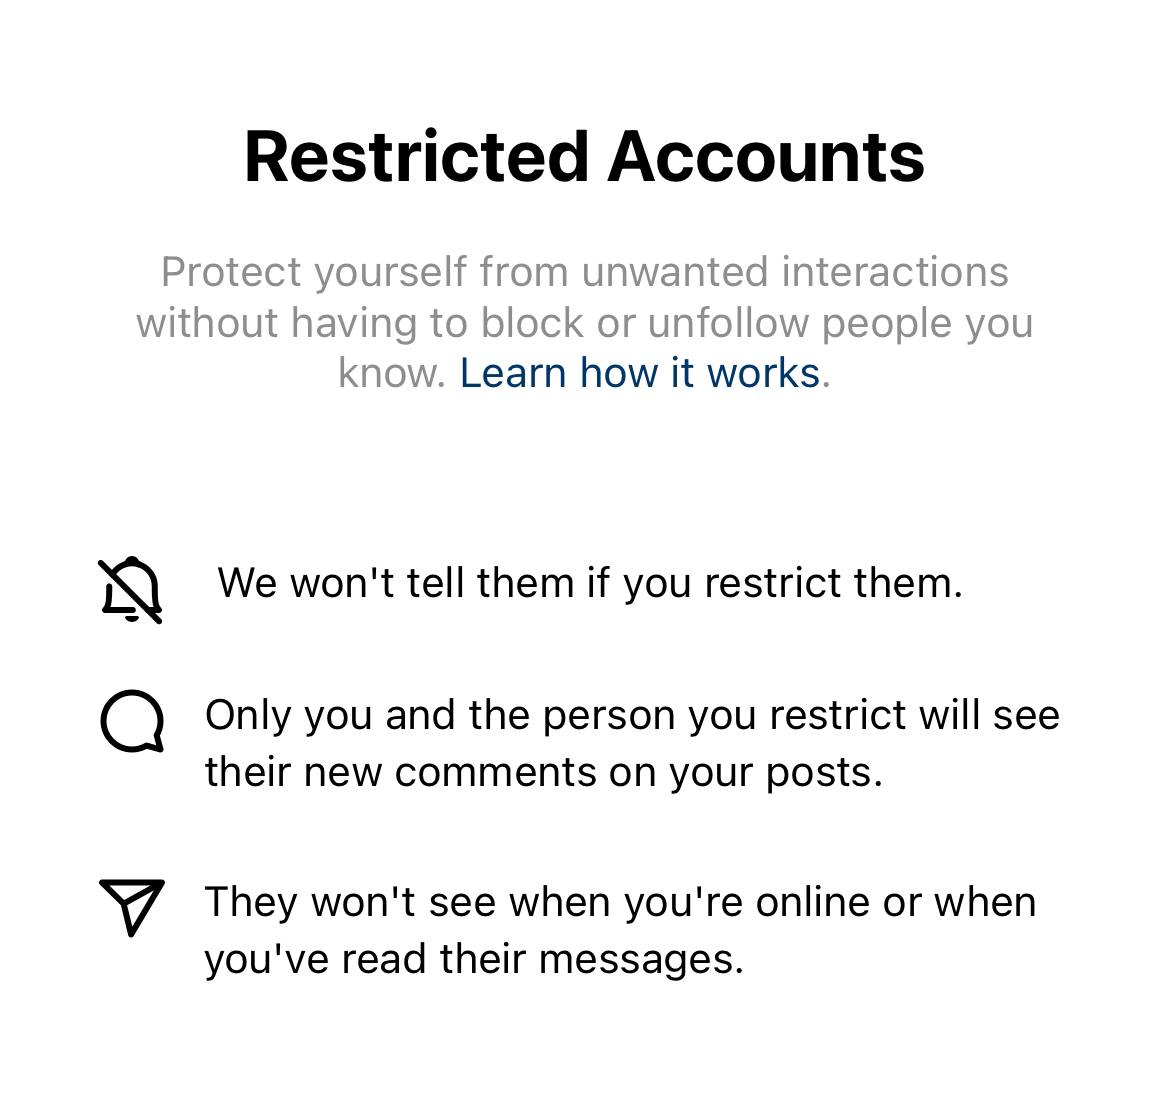 Описание функции «ограничения» пользователя в Instagram (продукт компании Meta, признанной экстремистской организацией в РФ)